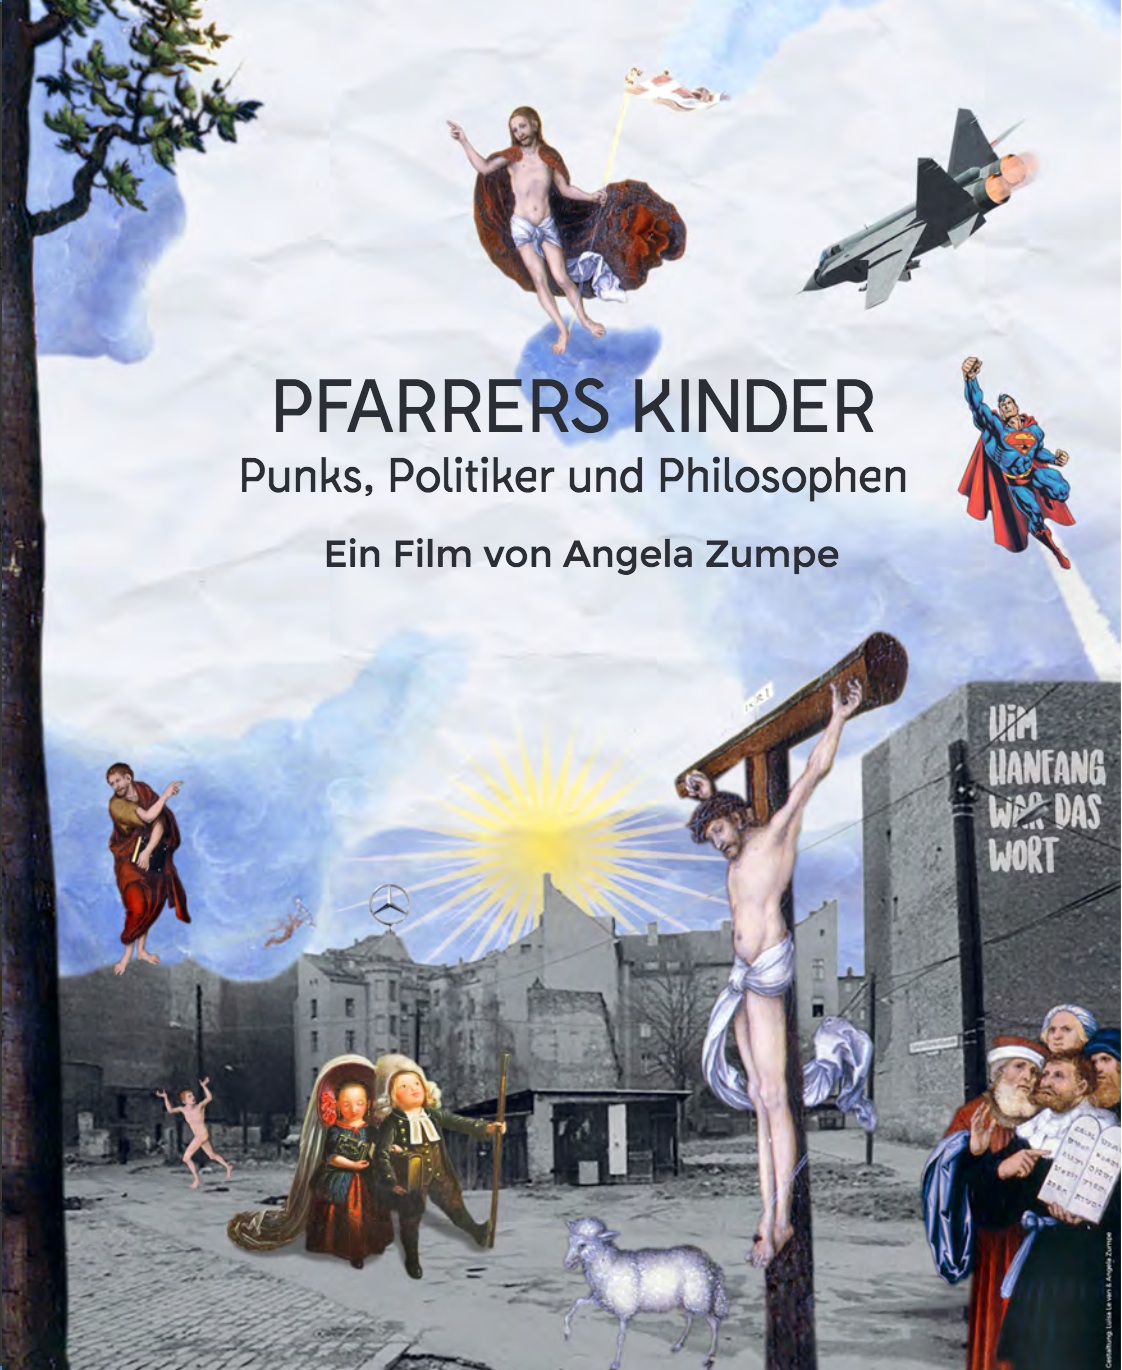 Pfarrers Kinder. Punks, Politiker und Philosophen, Bild: R: Angela Zumpe, D 2016..